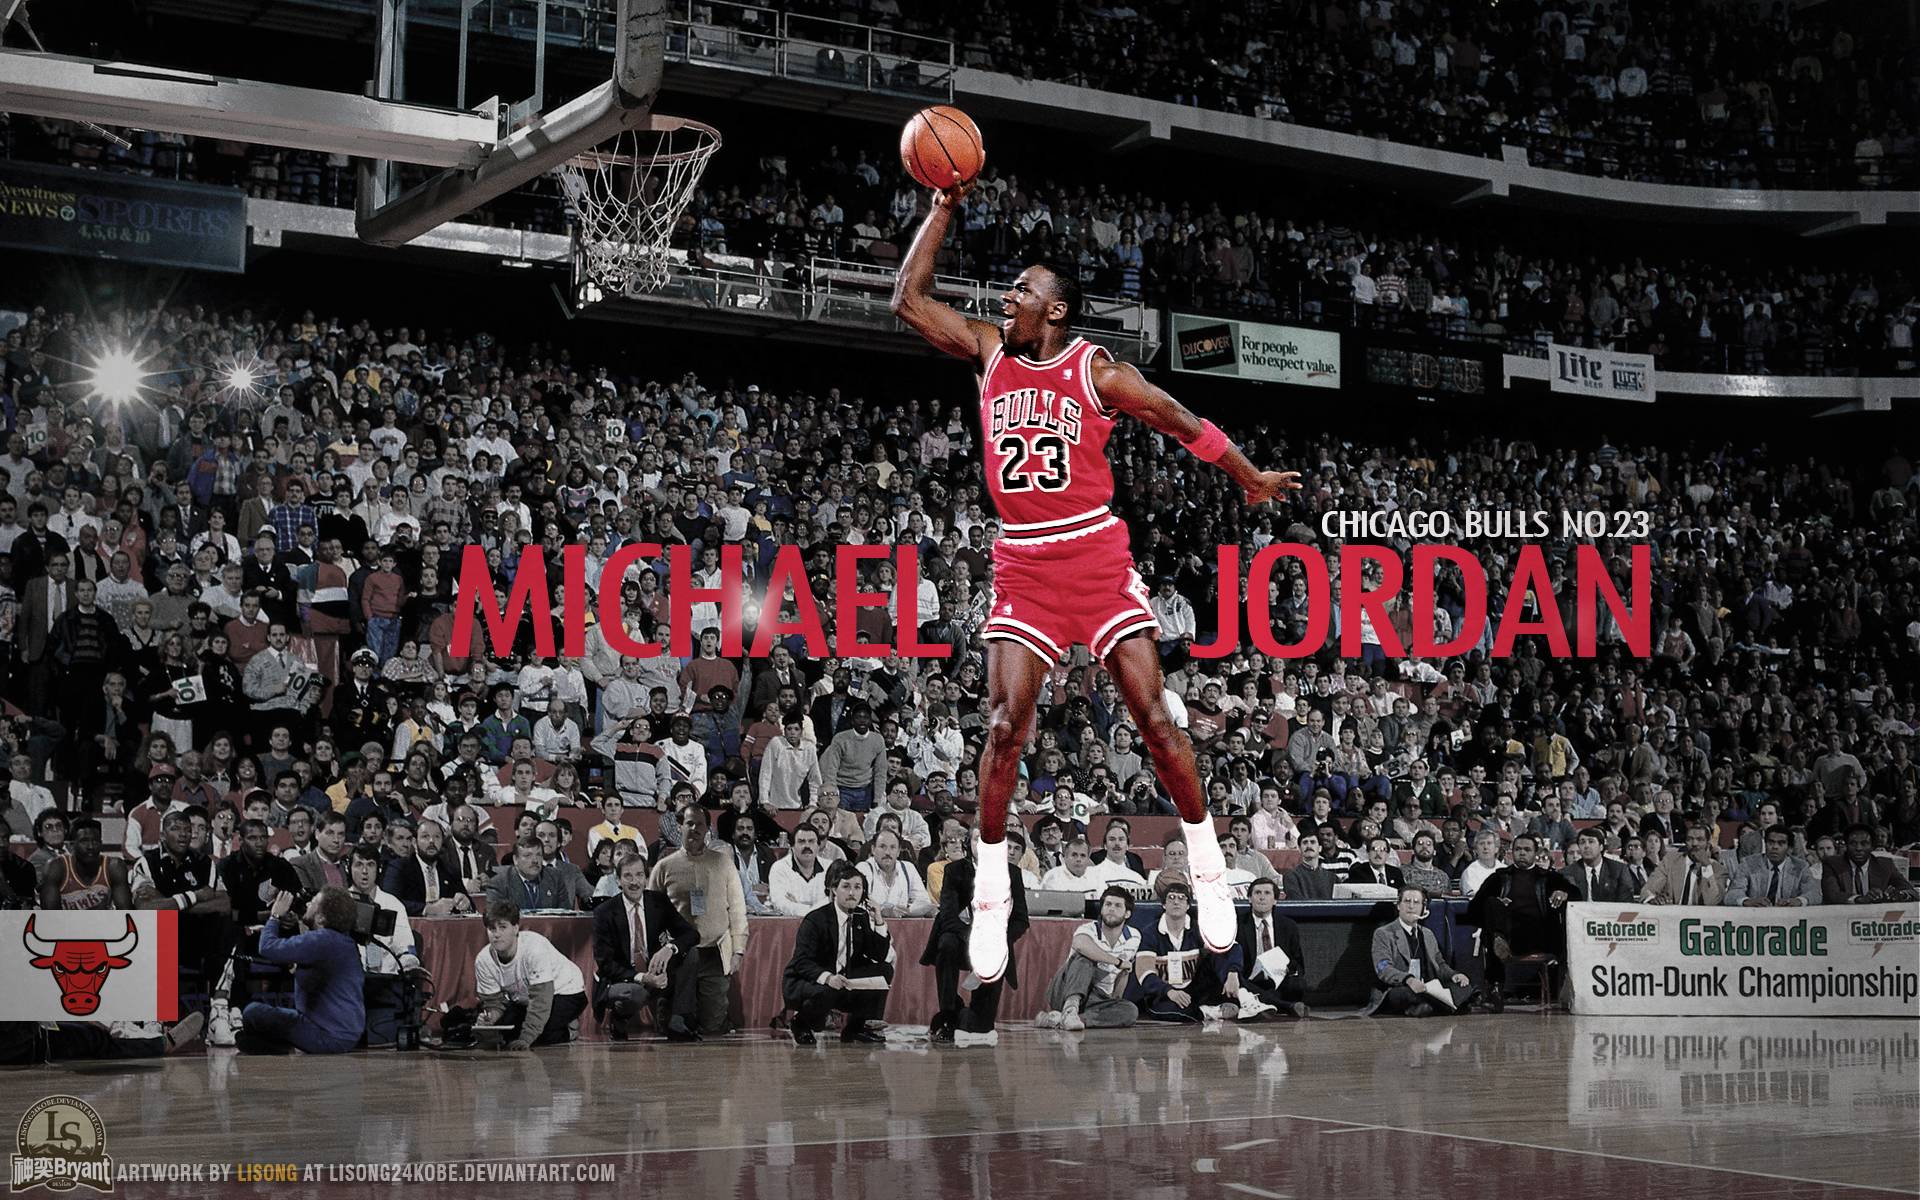 Wallpapers Of Michael Jordan - Wallpaper Cave